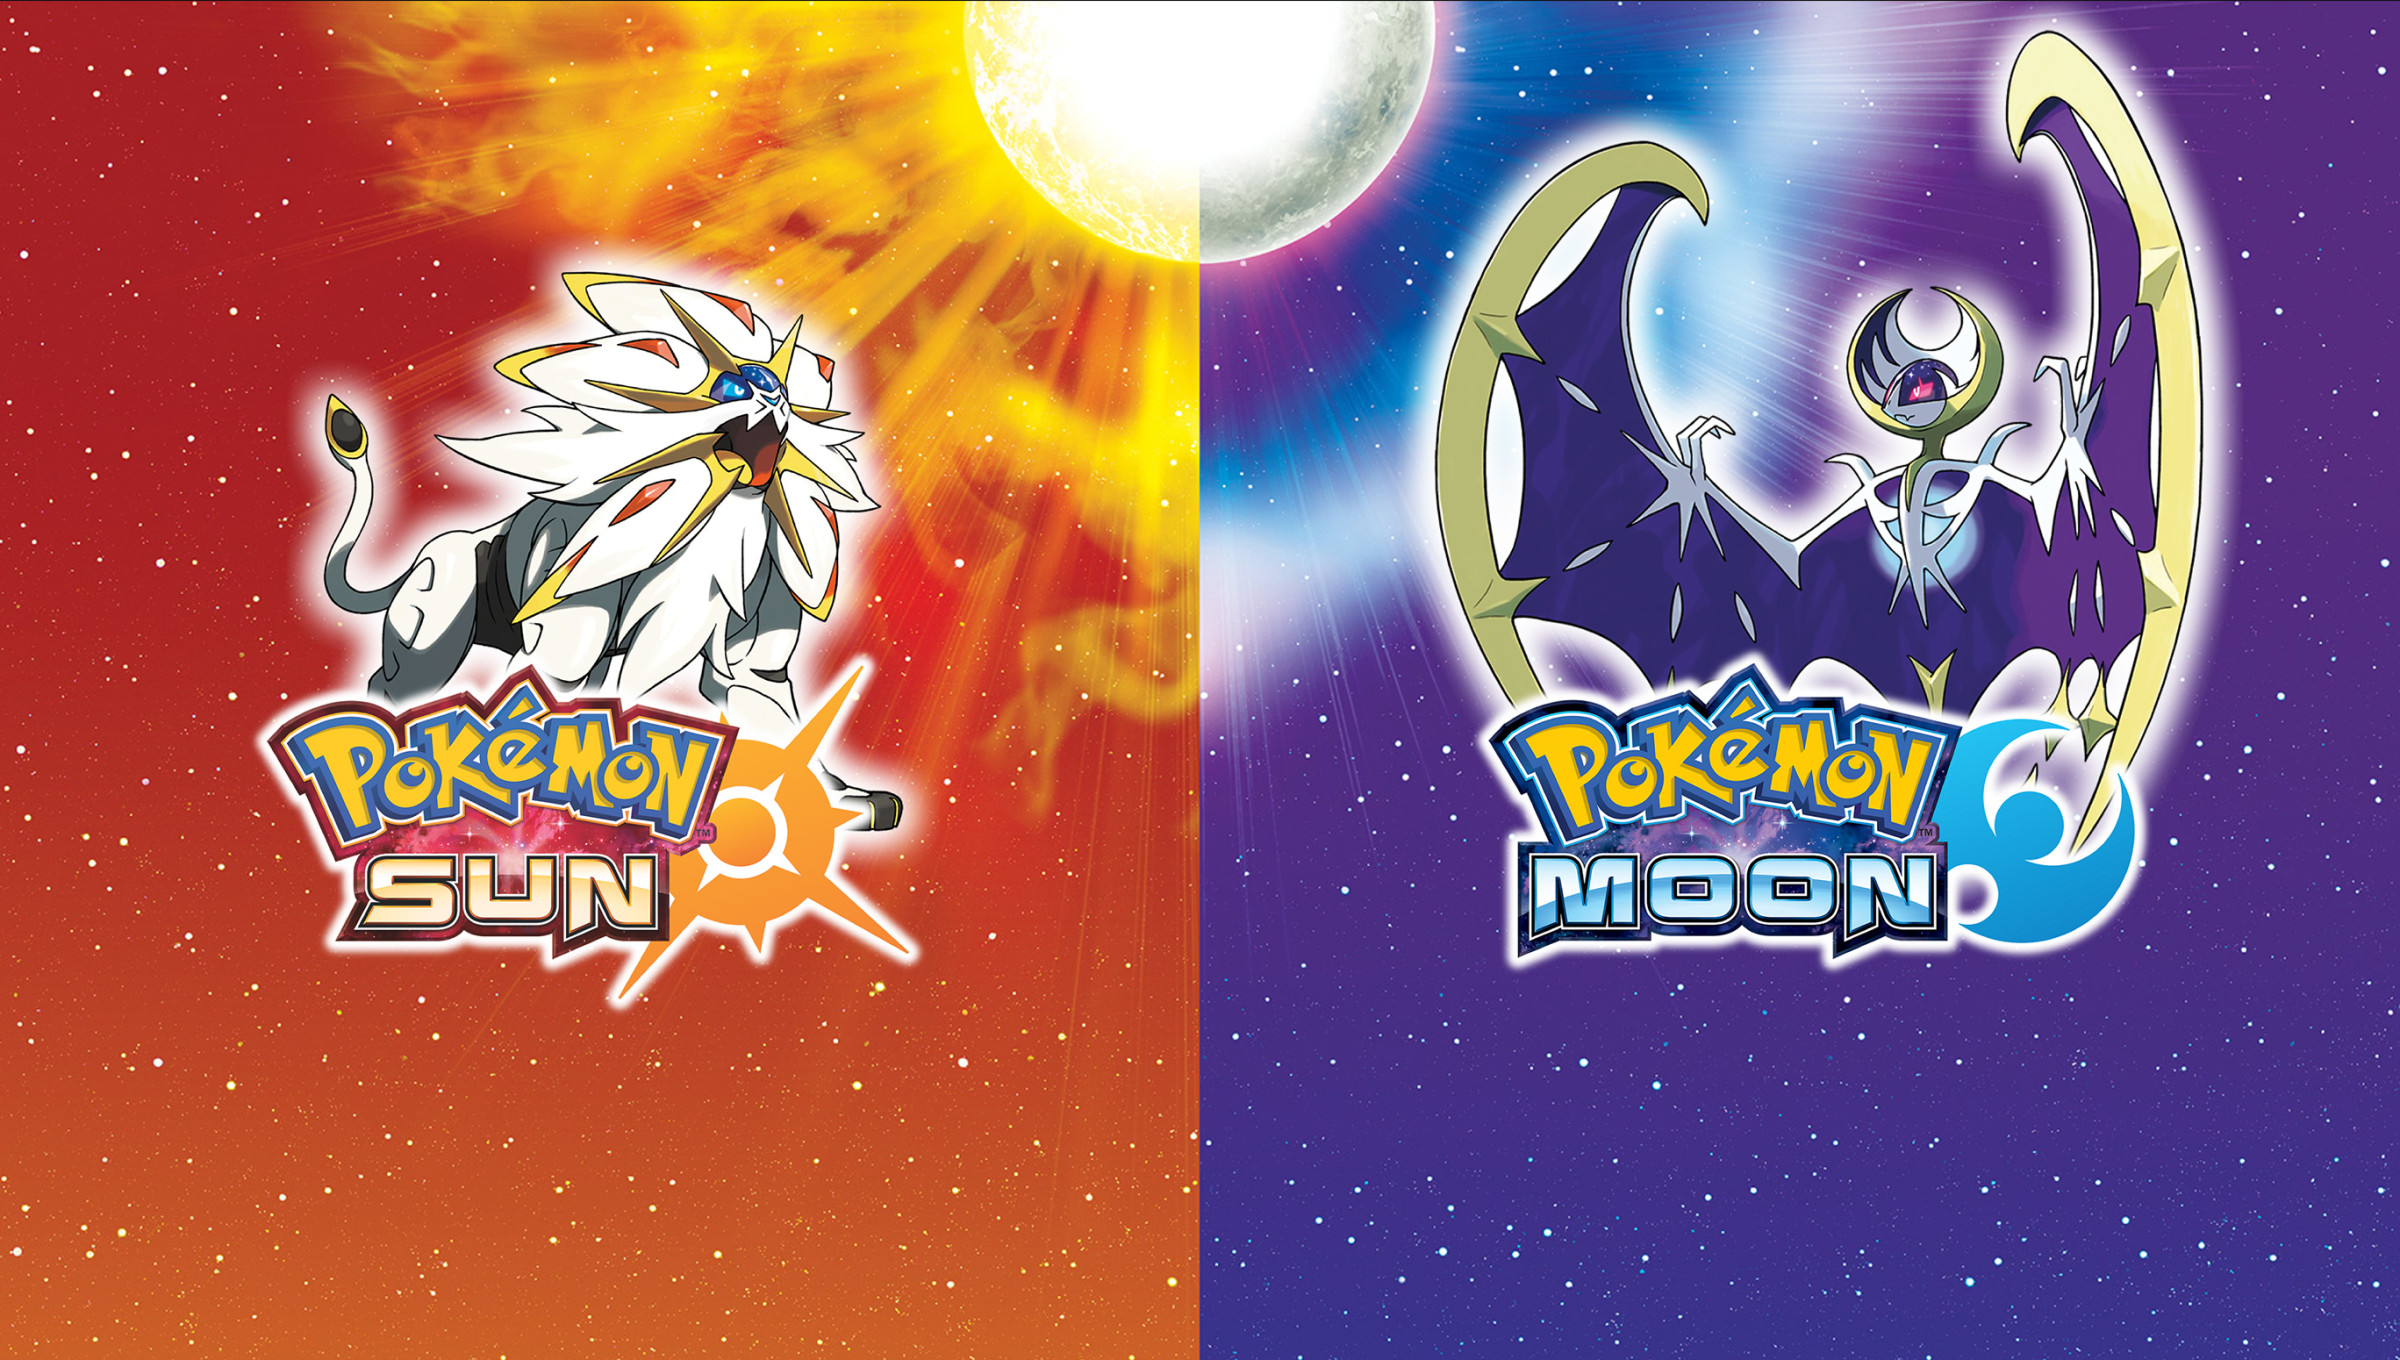 Pokémon Sun for 3DS Nintendo Official Site